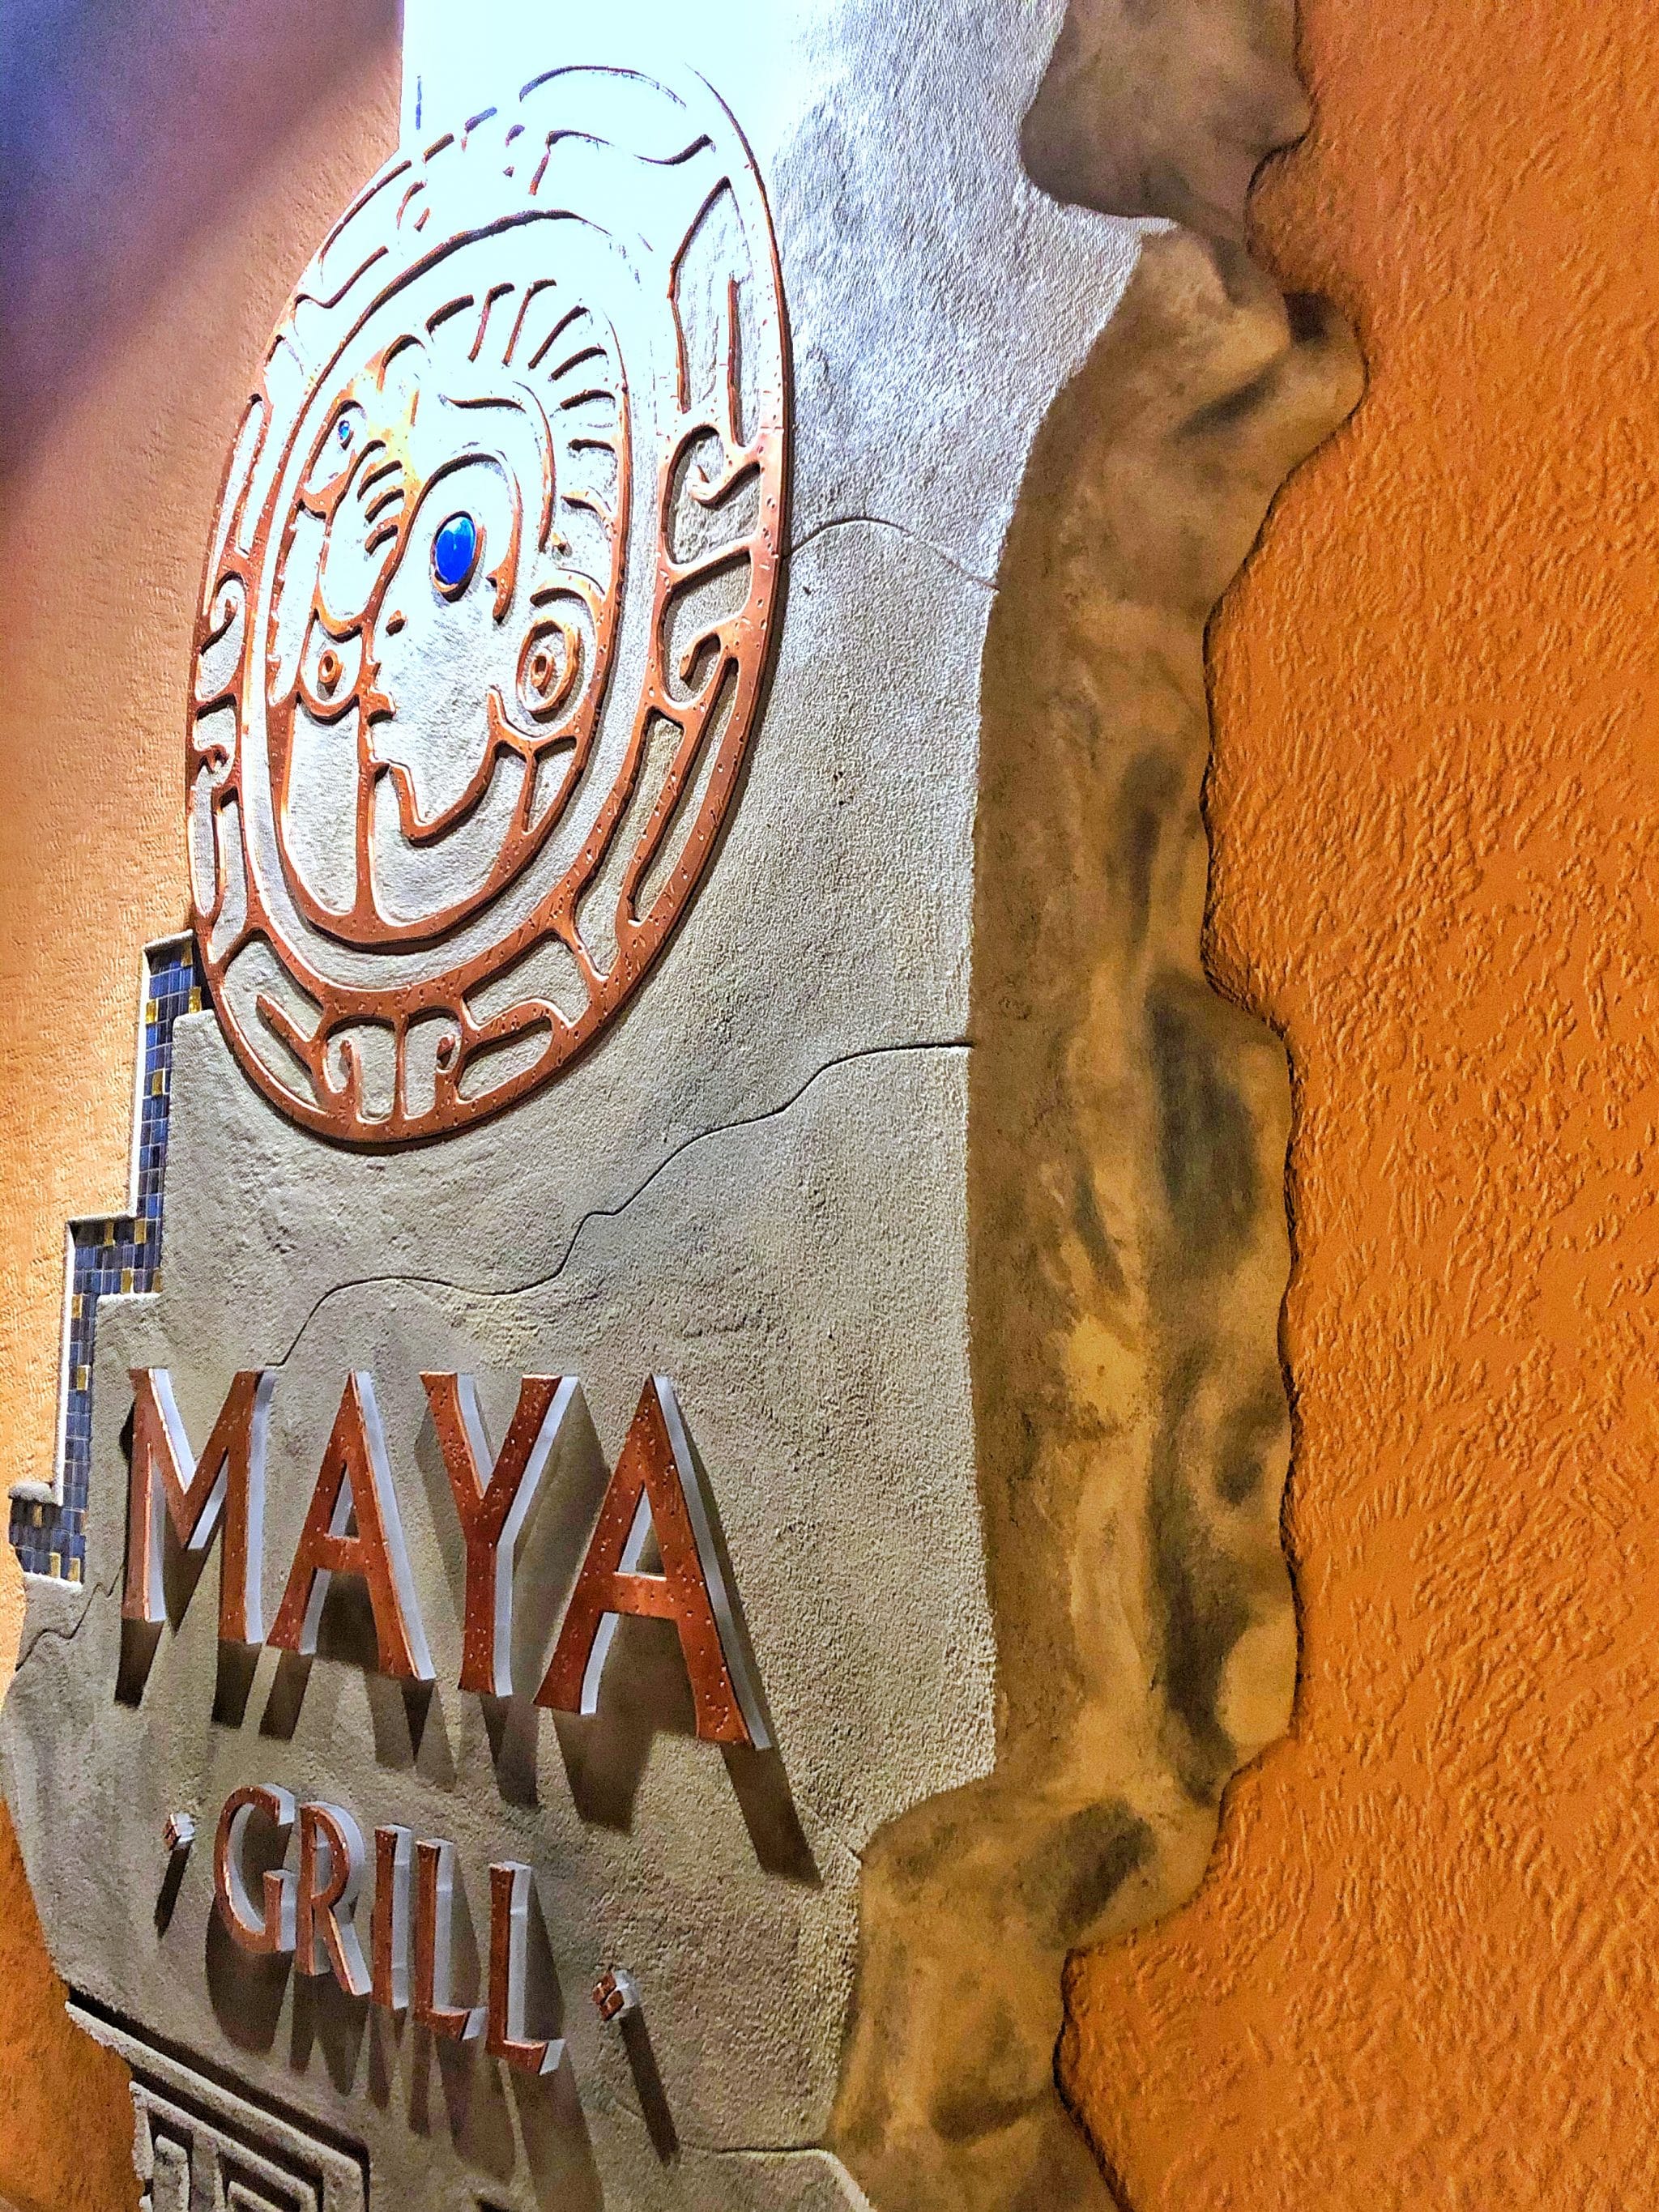 Maya Grill Vegan Dinner Review at Disney’s Coronado Springs Resort in Walt Disney World